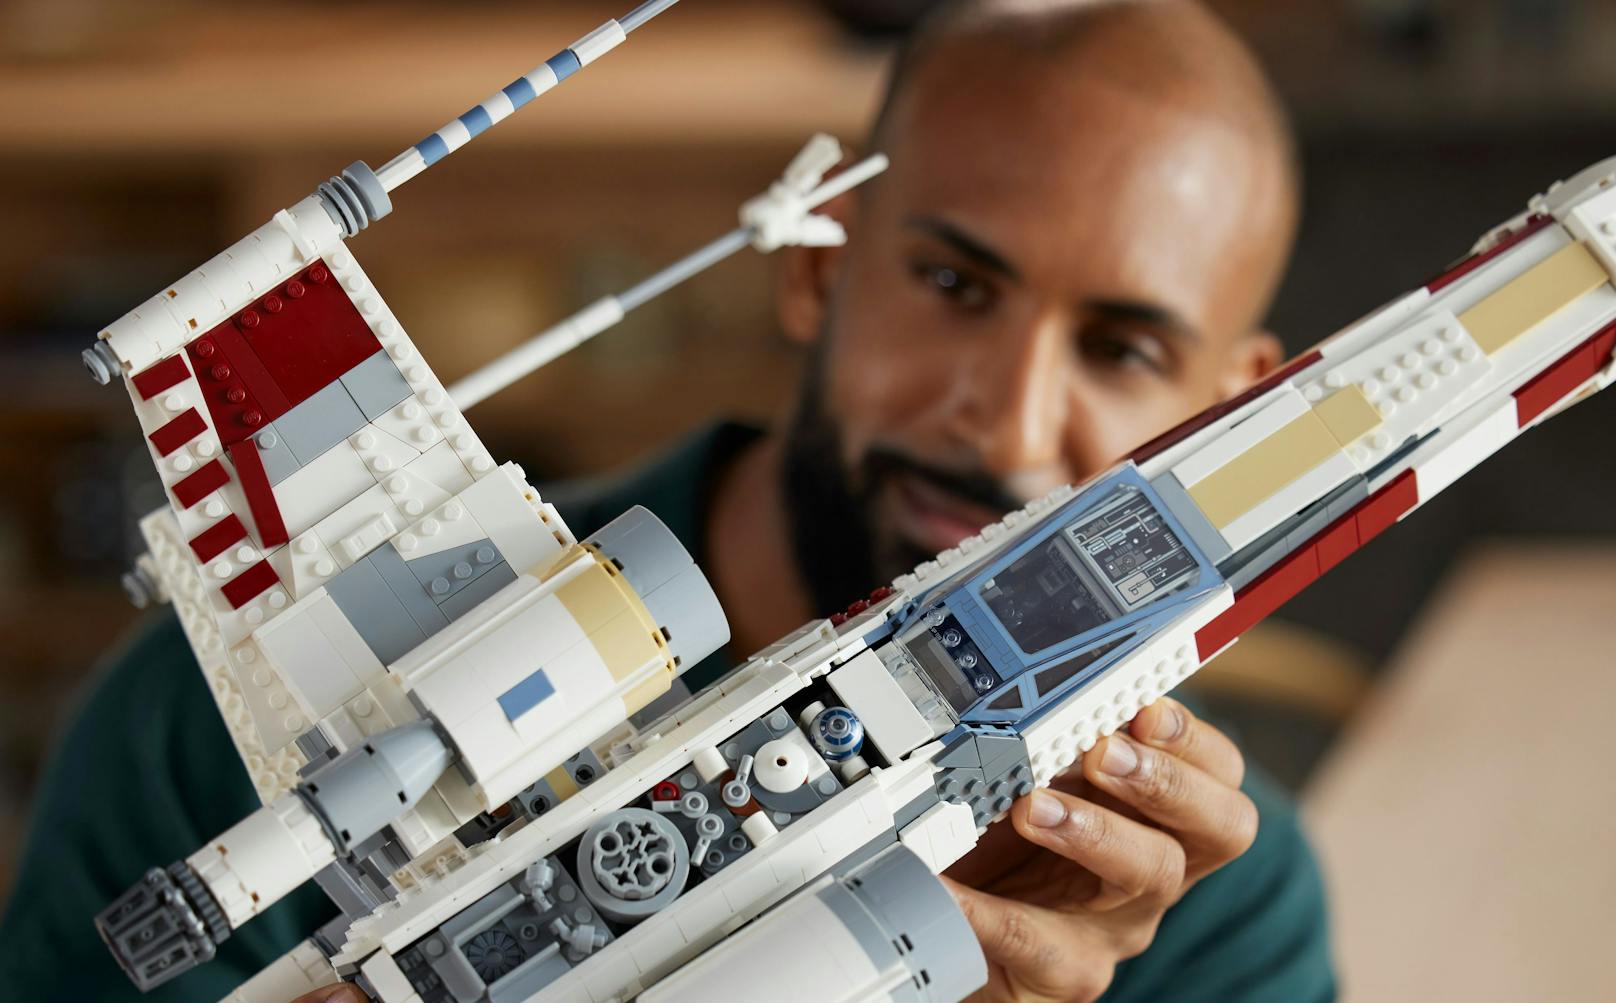 Als großes, neues Star-Wars-Set erscheint mit dem LEGO Star Wars X-Wing Starfighter ein altbekanntes Raumschiff in neuer Version. Das neue Modell der Ultimate Collector Series...